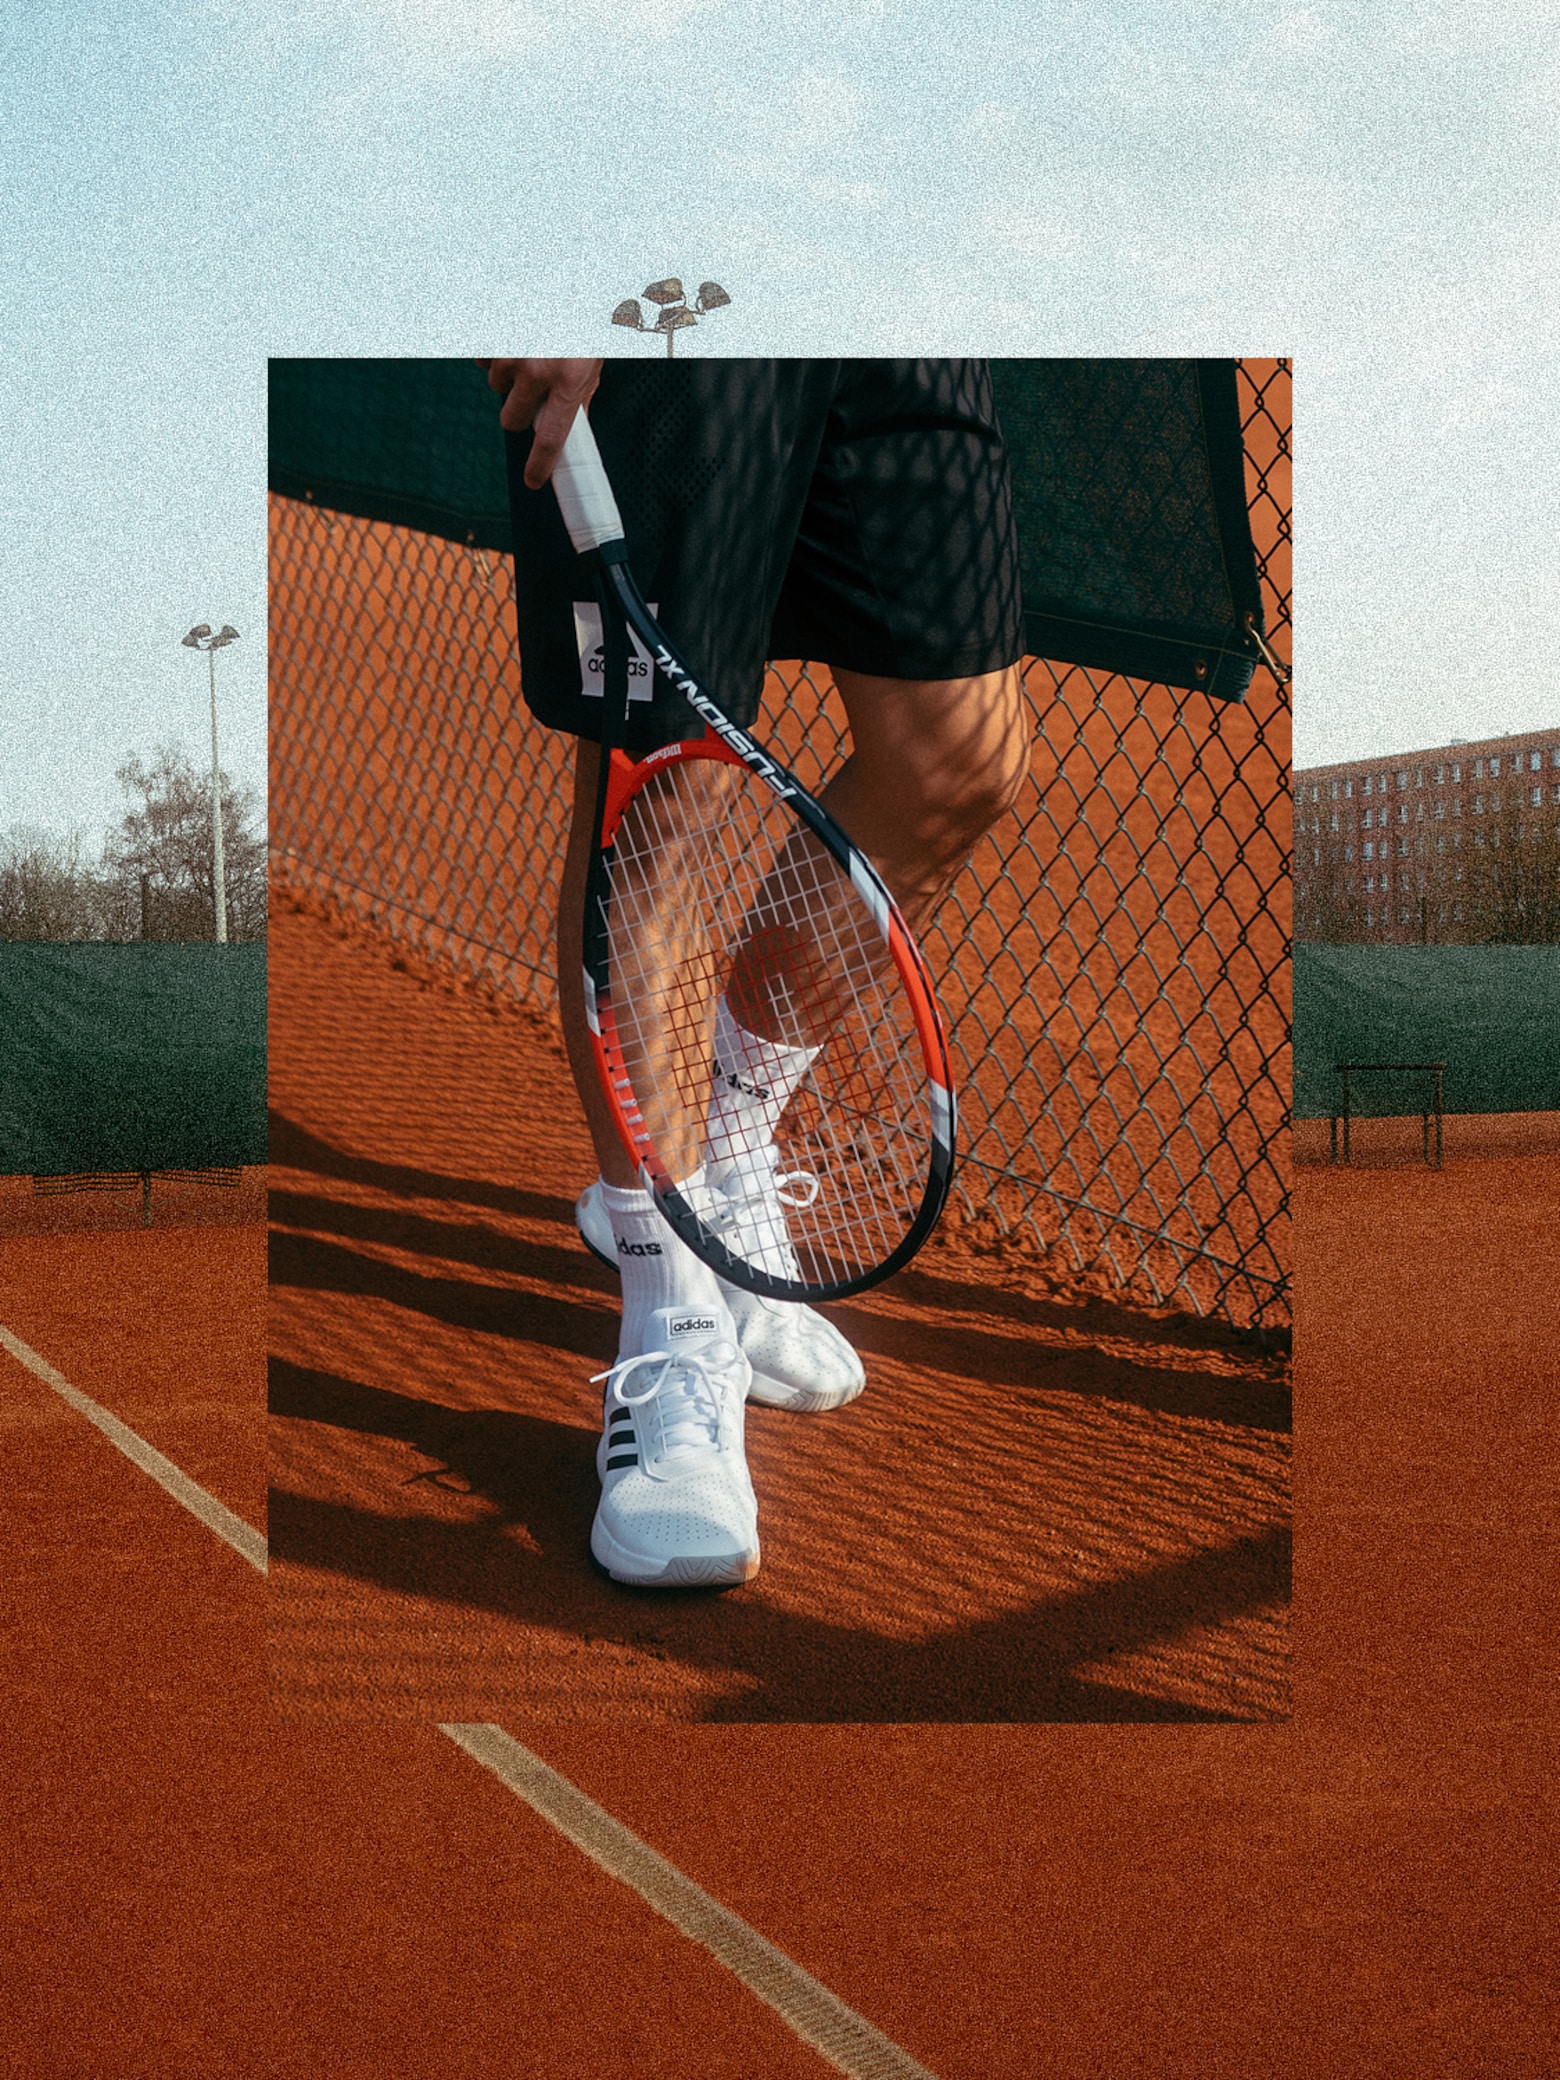 Jeu, set et match Le guide des chaussures de tennis